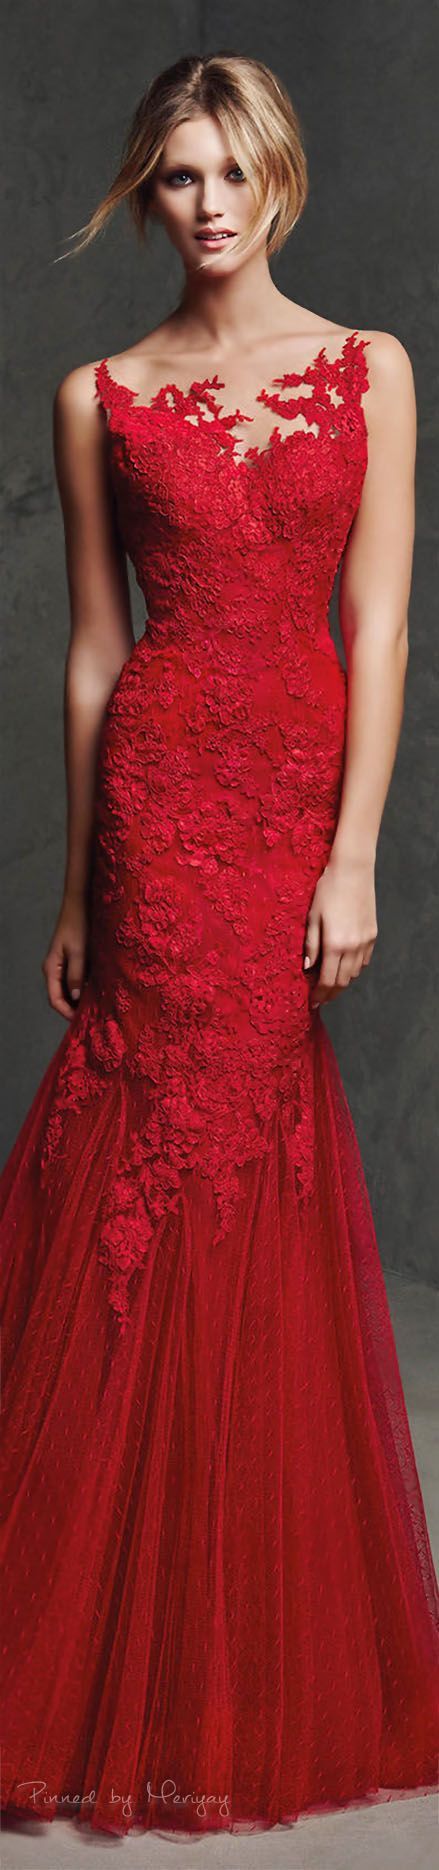 Jolie robe rouge jolie-robe-rouge-68